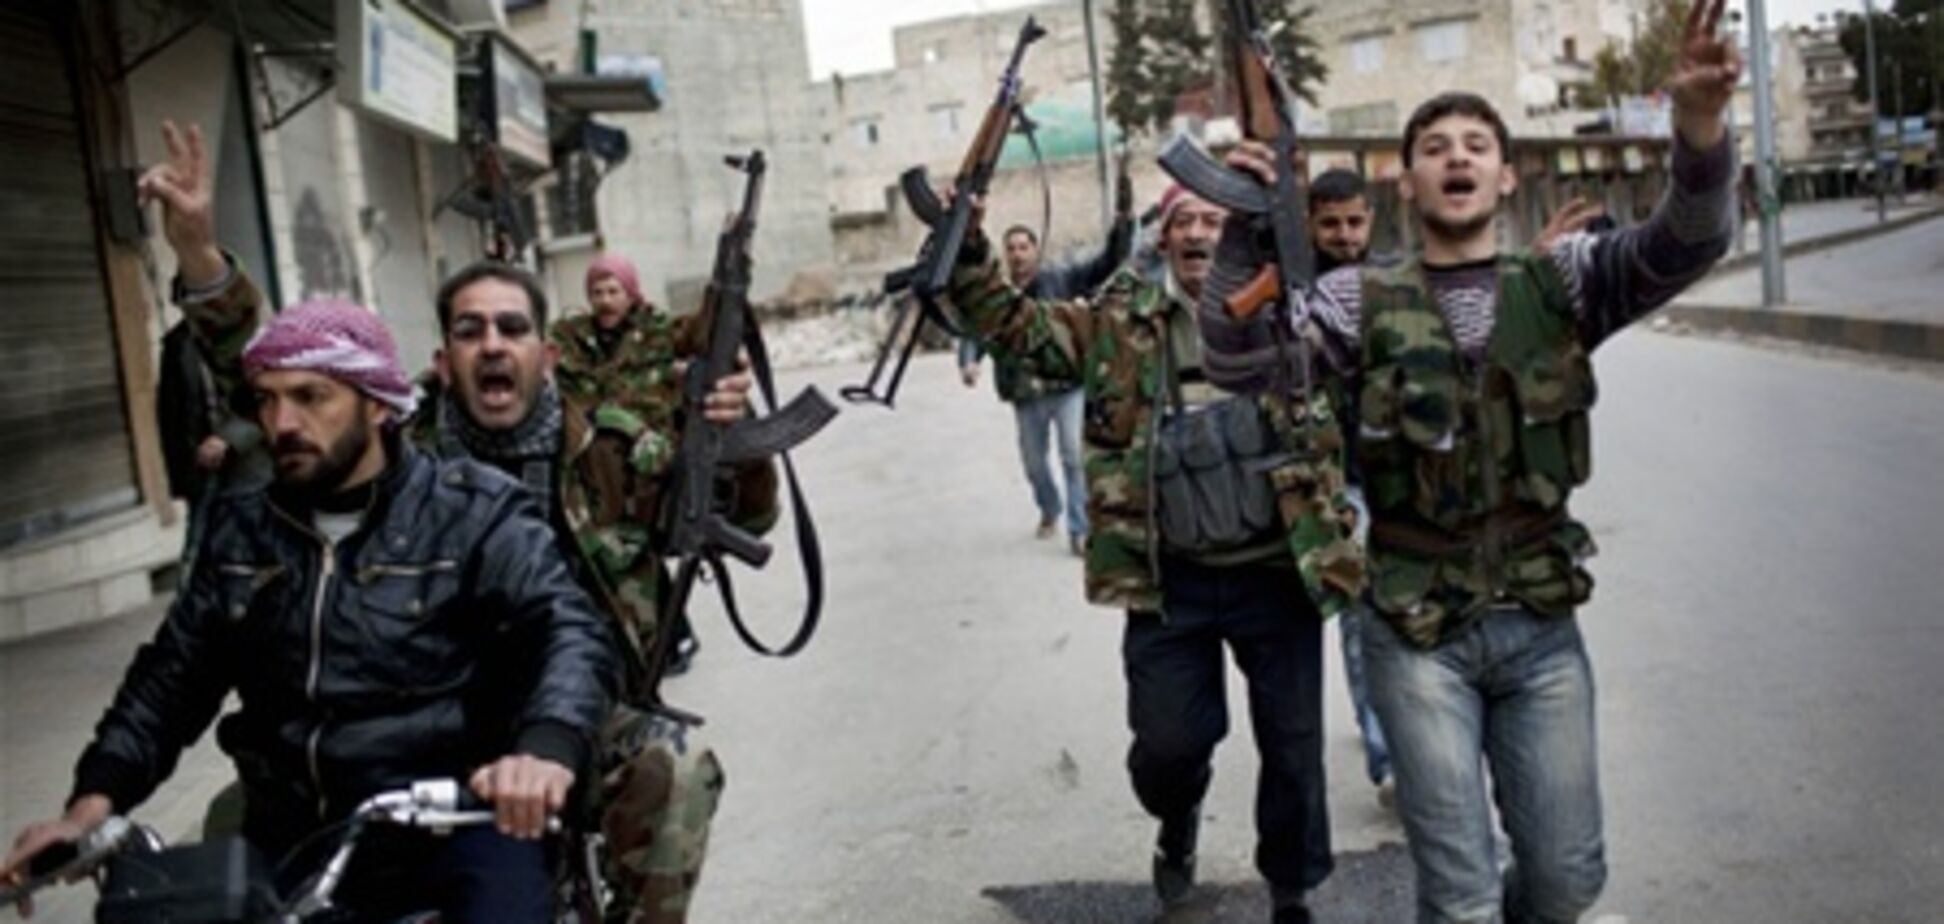 Der Spiegel: фахівці з США тренують сирійських повстанців 